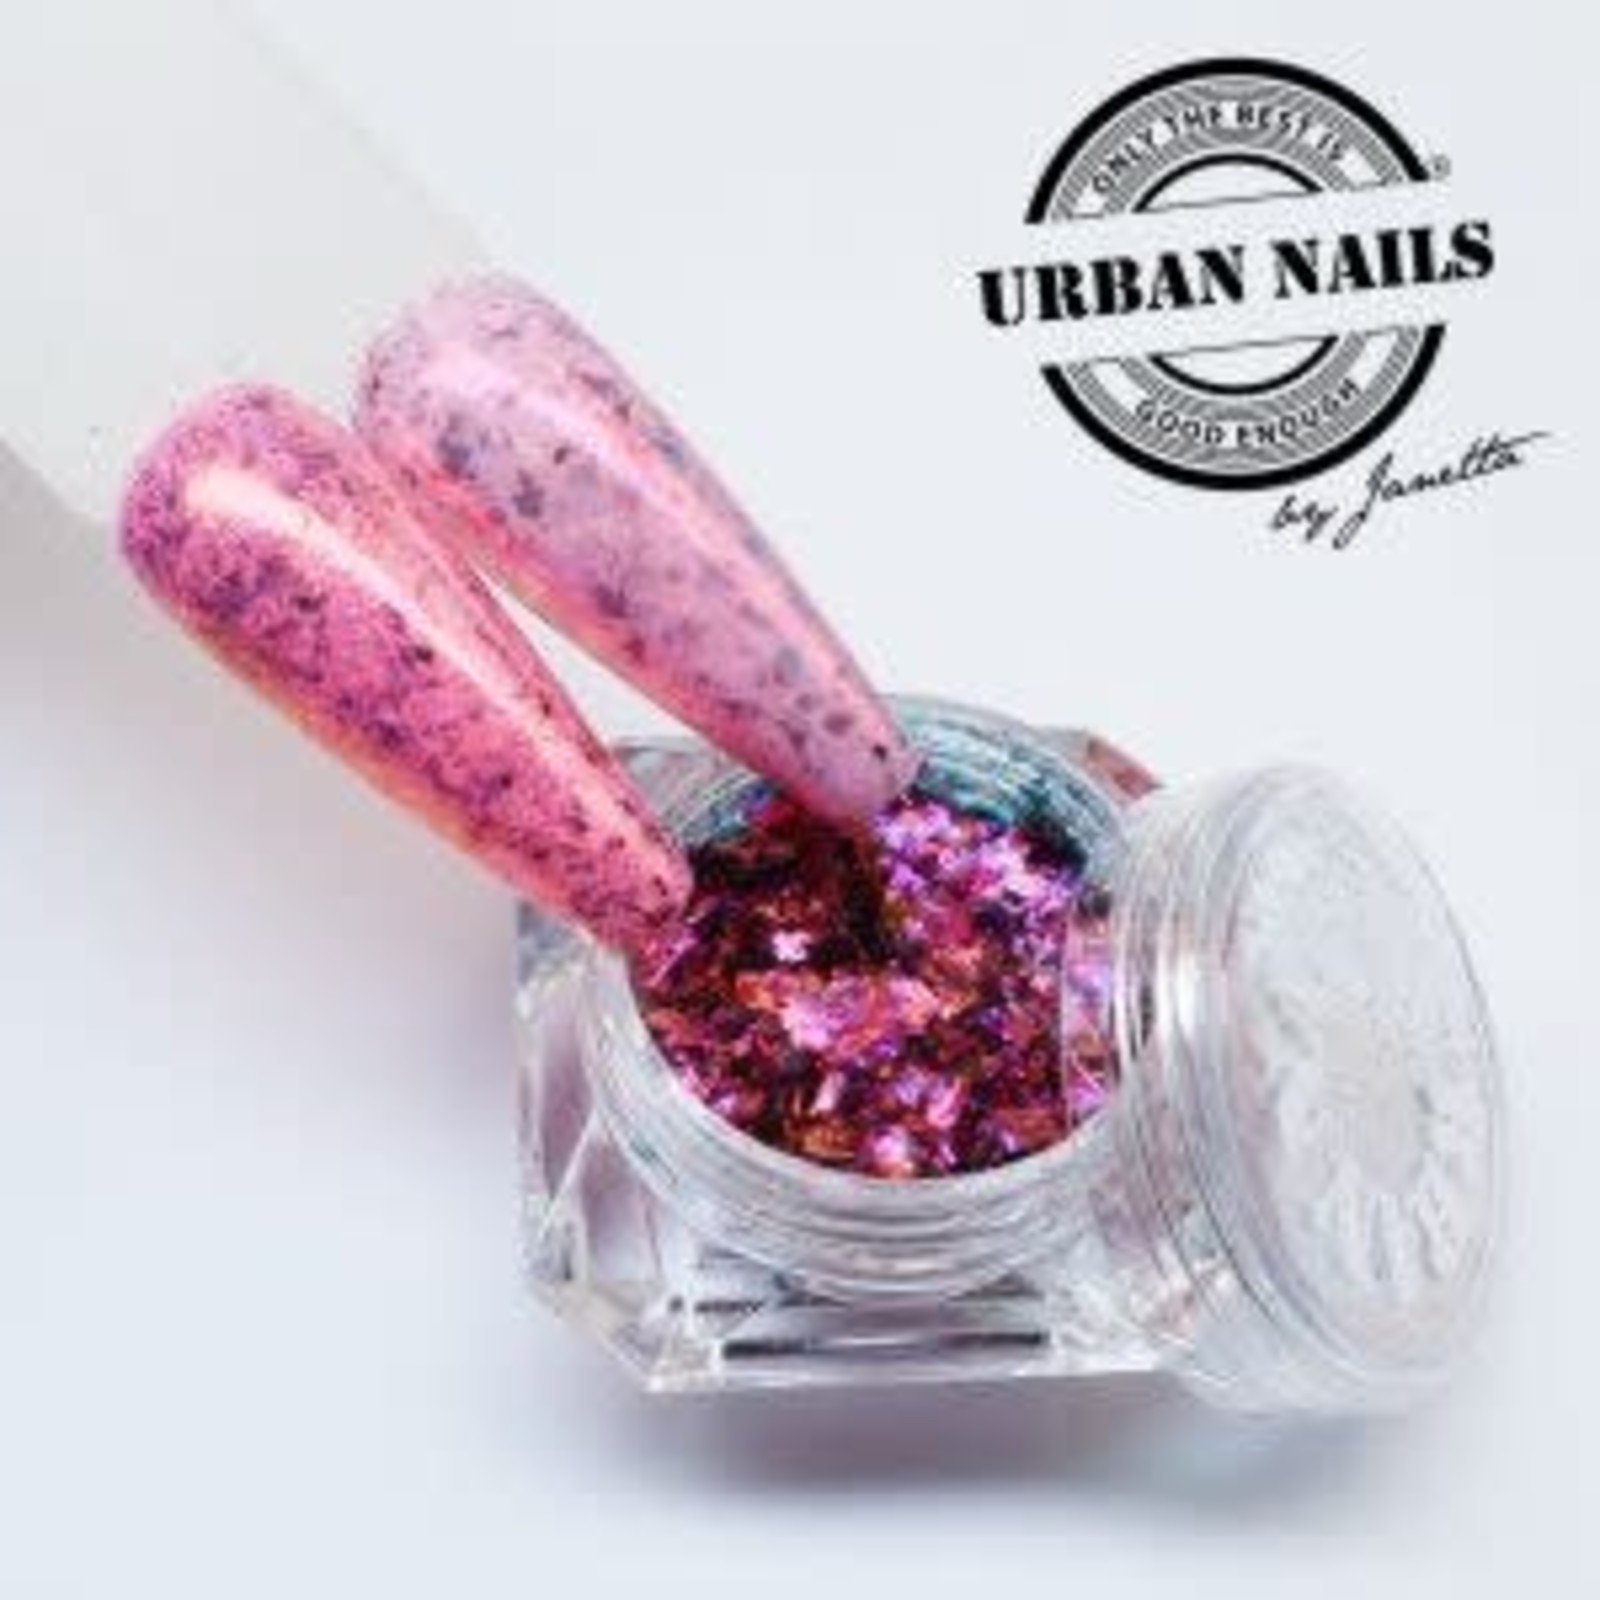 Urban nails Diamond Flake 08